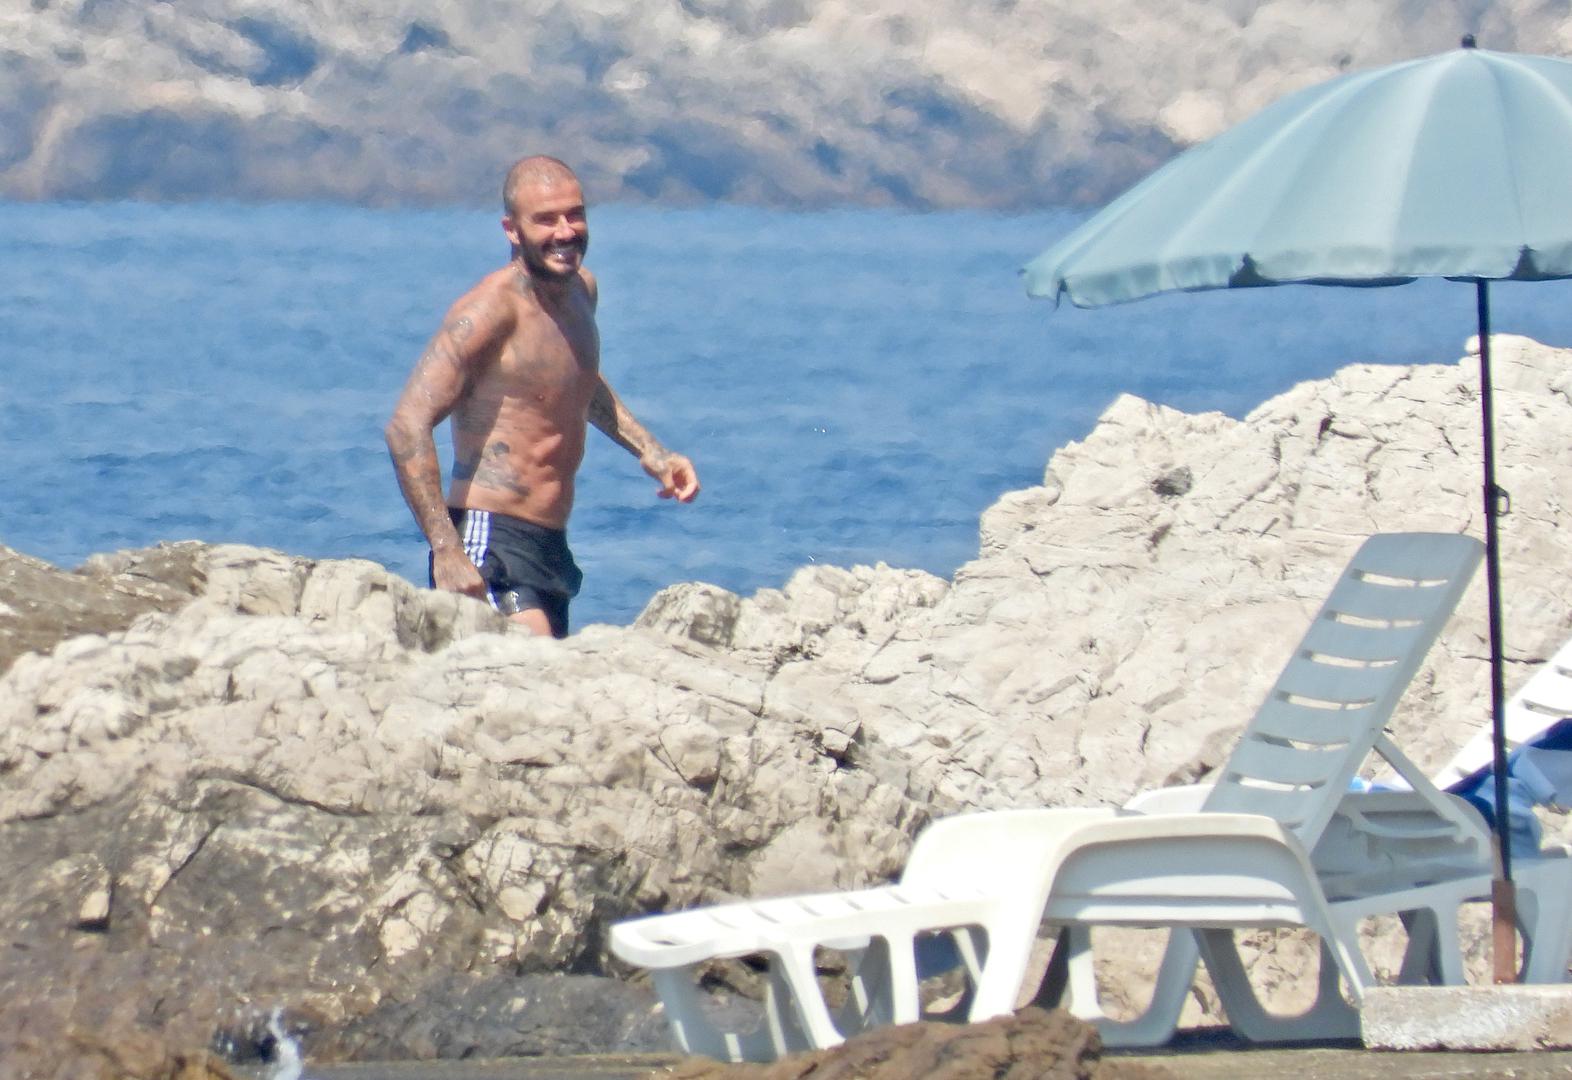 Bivši nogometaš David Beckham 2022. godine s obitelji je odmarao u Hrvatskoj. Odsjeli su na Lopudu u resortu Lopud 1483. Prvih nekoliko dana uspješno su izbjegavali fotoreportere, ali nakon toga su snimljeni kako uživaju u morskim radostima. 
